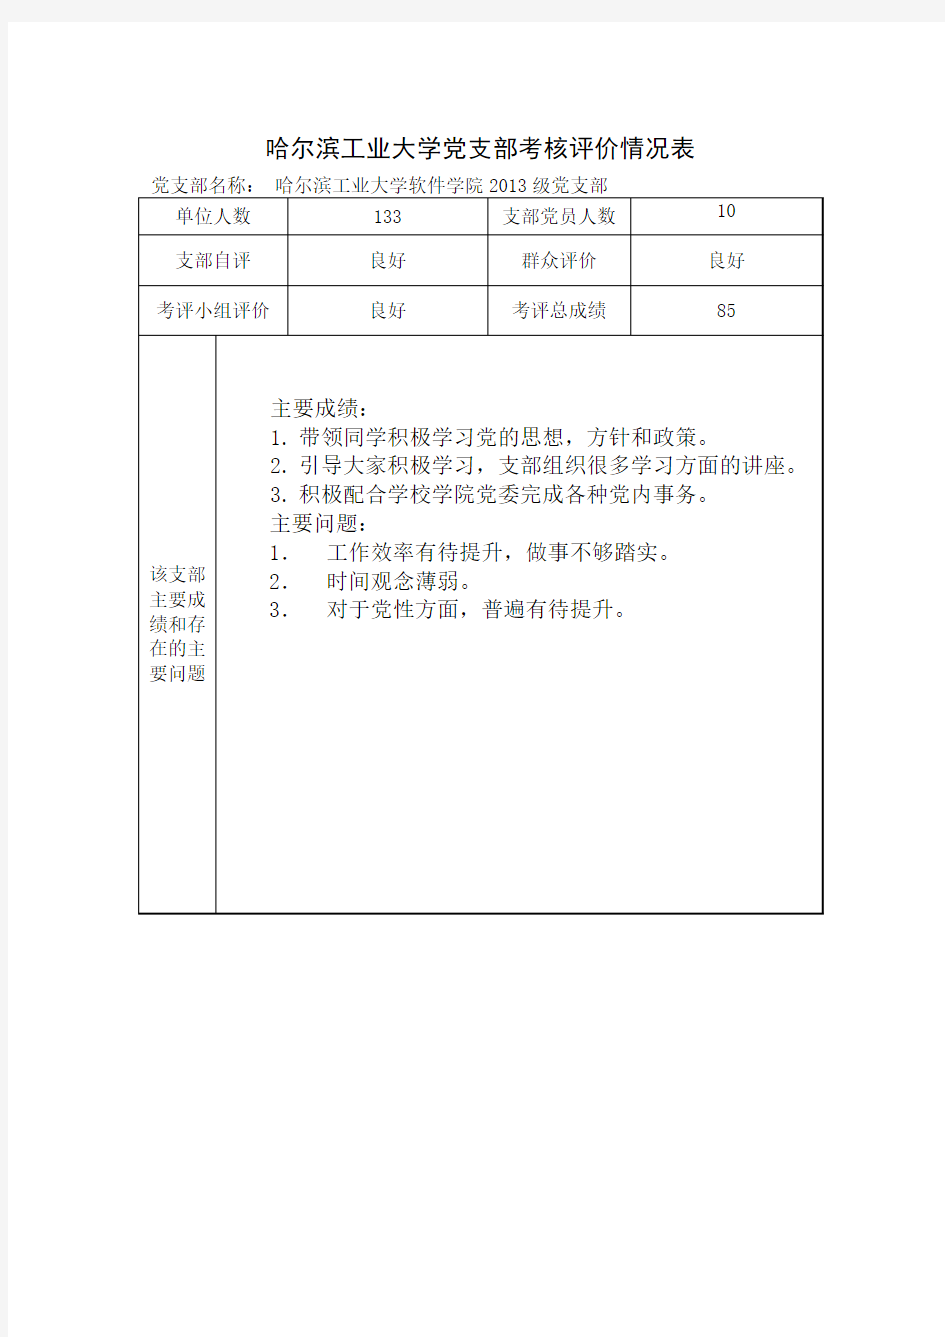 哈尔滨工业大学党支部考核评价情况表